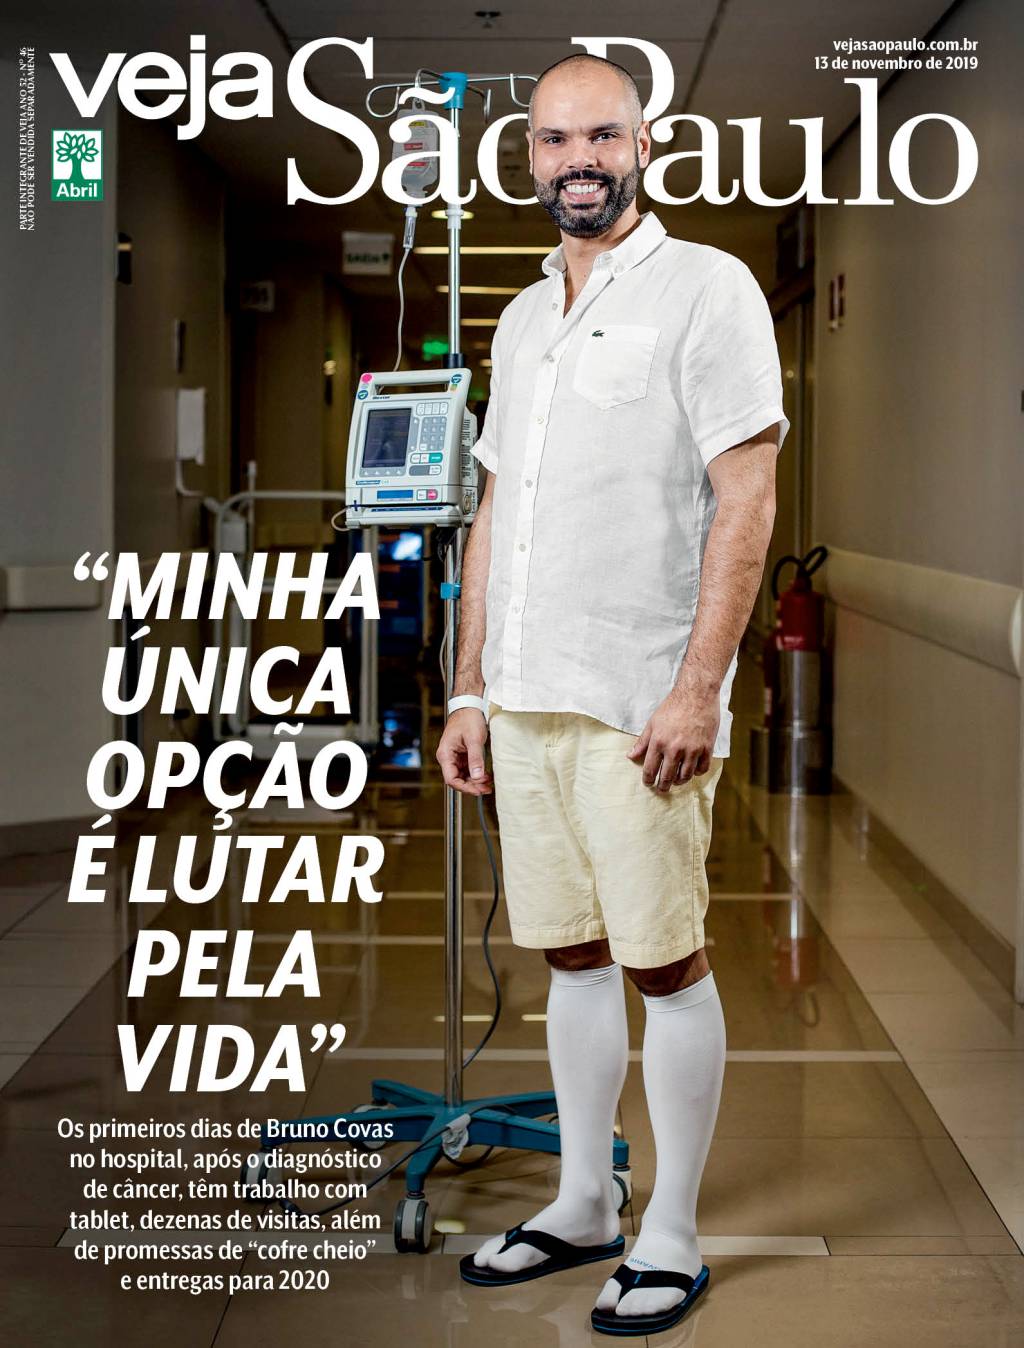 Bruno Covas posa com equipamentos de hospital e meias brancas compridas